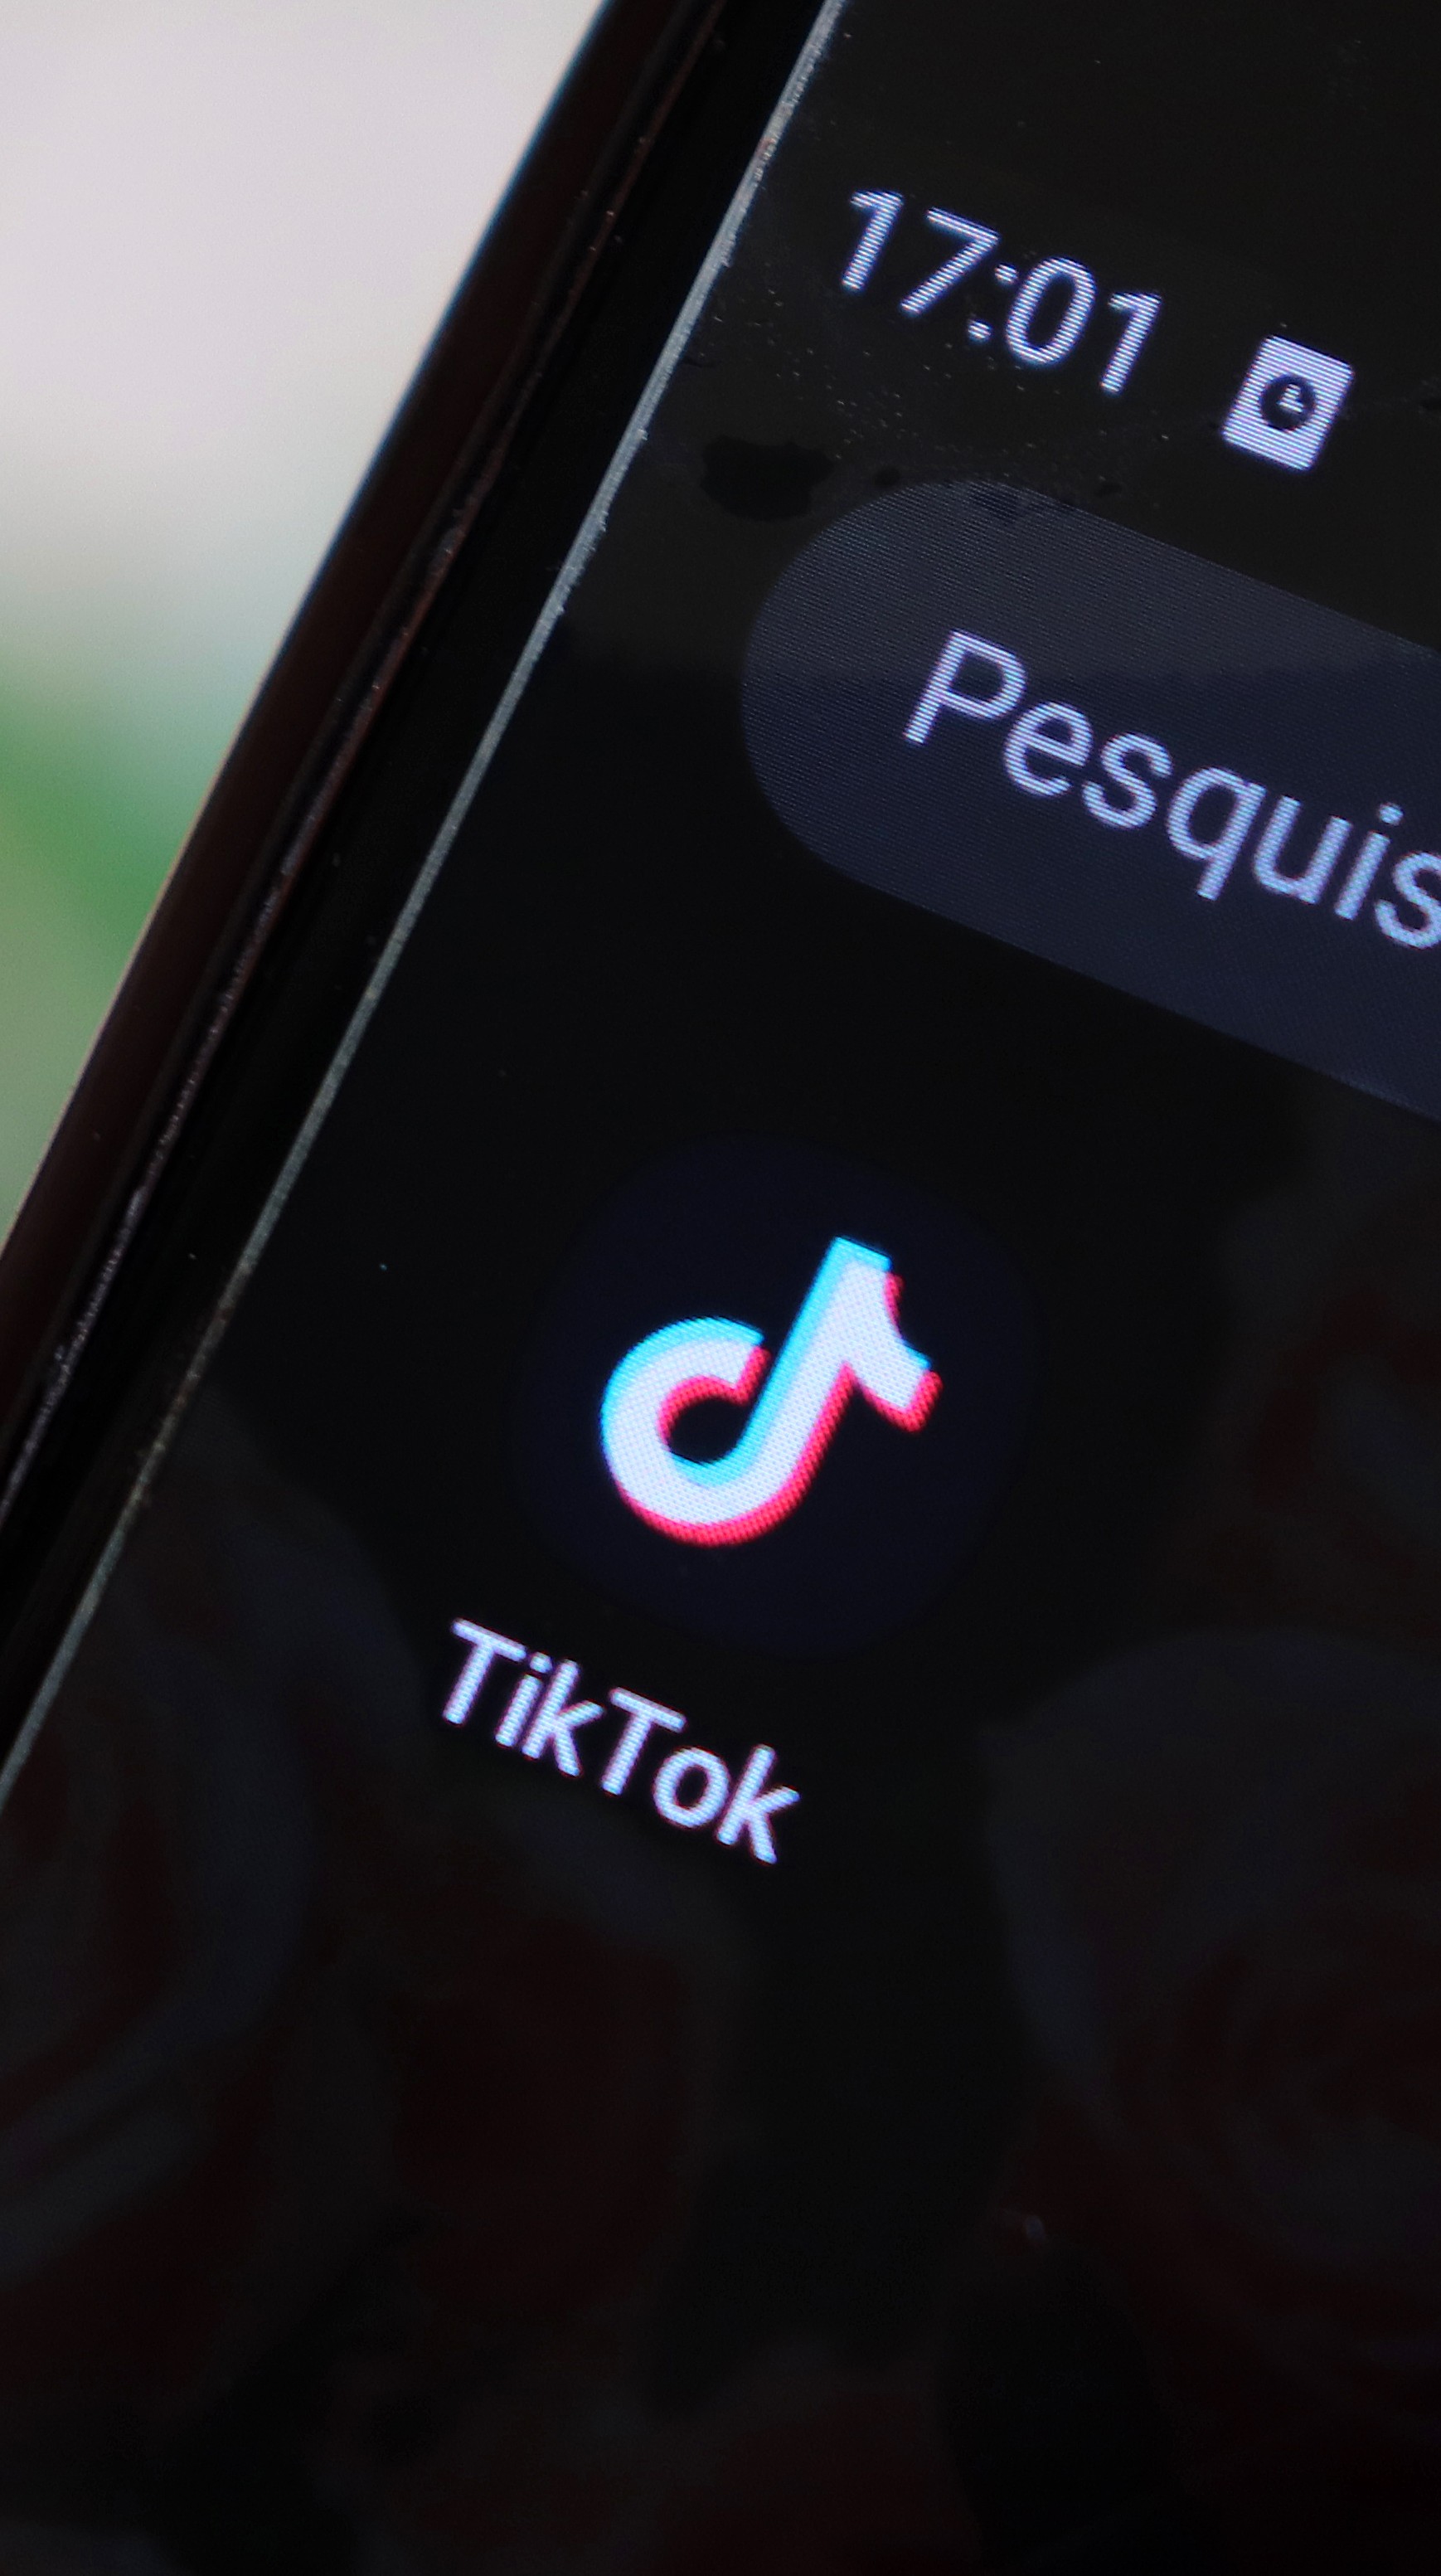 Saiba o significado das siglas e termos mais populares no Tik Tok